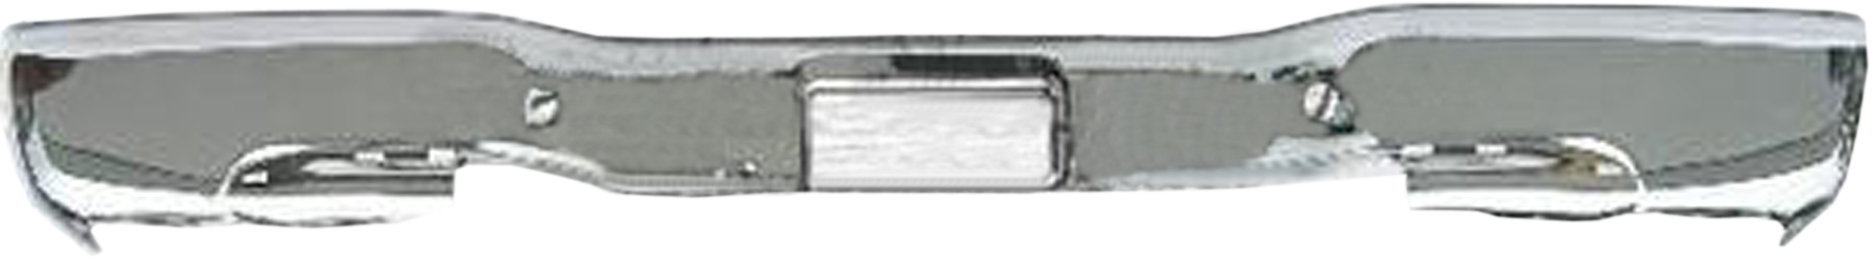 Aftermarket METAL REAR BUMPERS for CHEVROLET - SILVERADO 1500, SILVERADO 1500,99-06,Rear bumper face bar